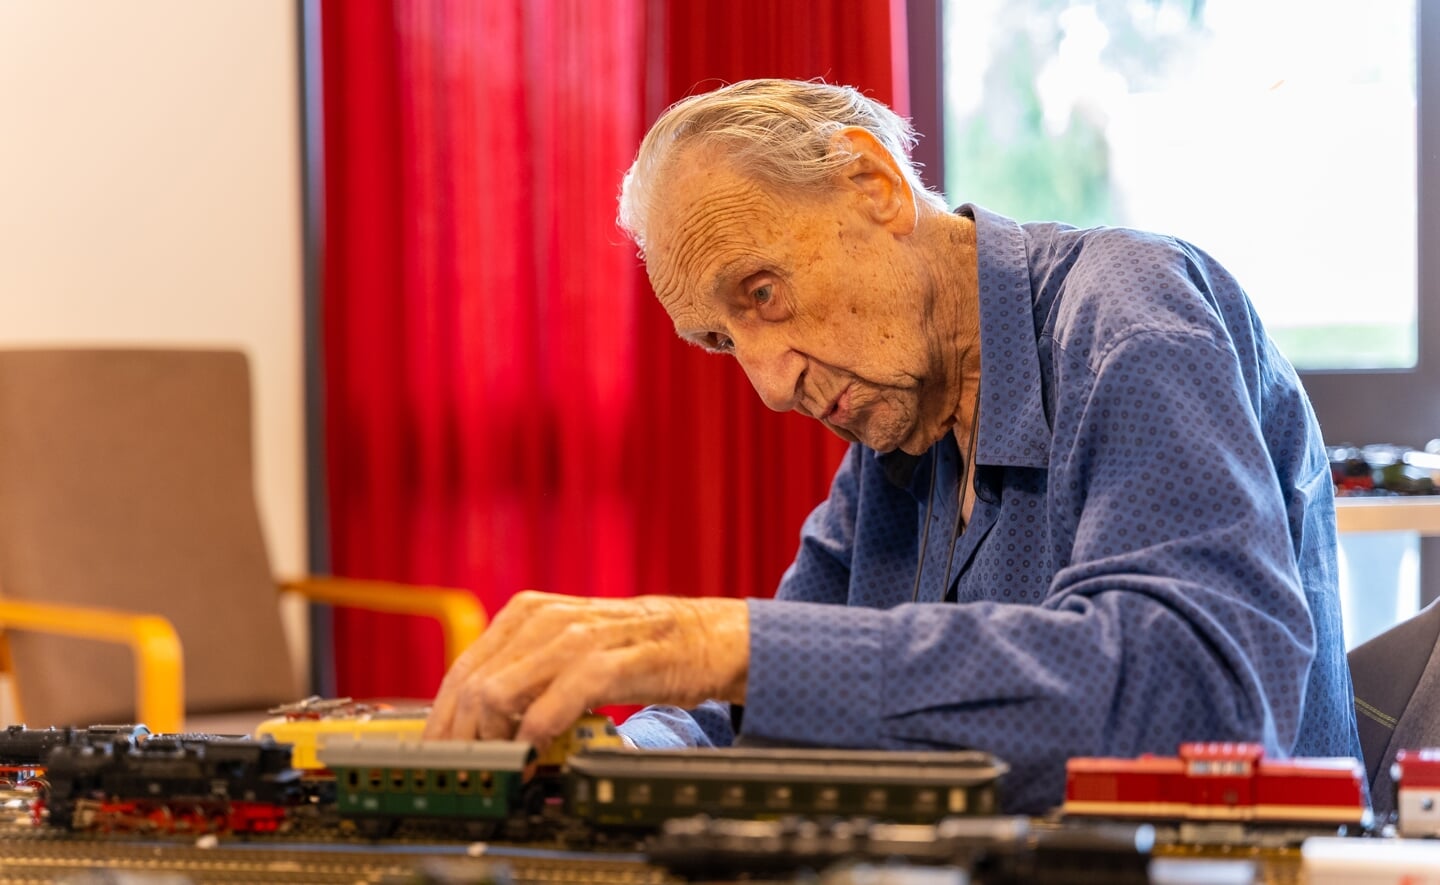 Ben Mols (94) is al zestig jaar verzot op modeltreinen. Om meer leven in de brouwerij te brengen in wijkhuis Simeonshof, heeft hij met zoon Hans gewerkt aan een modelspoorplatform zodat de jeugd ermee kan spelen.